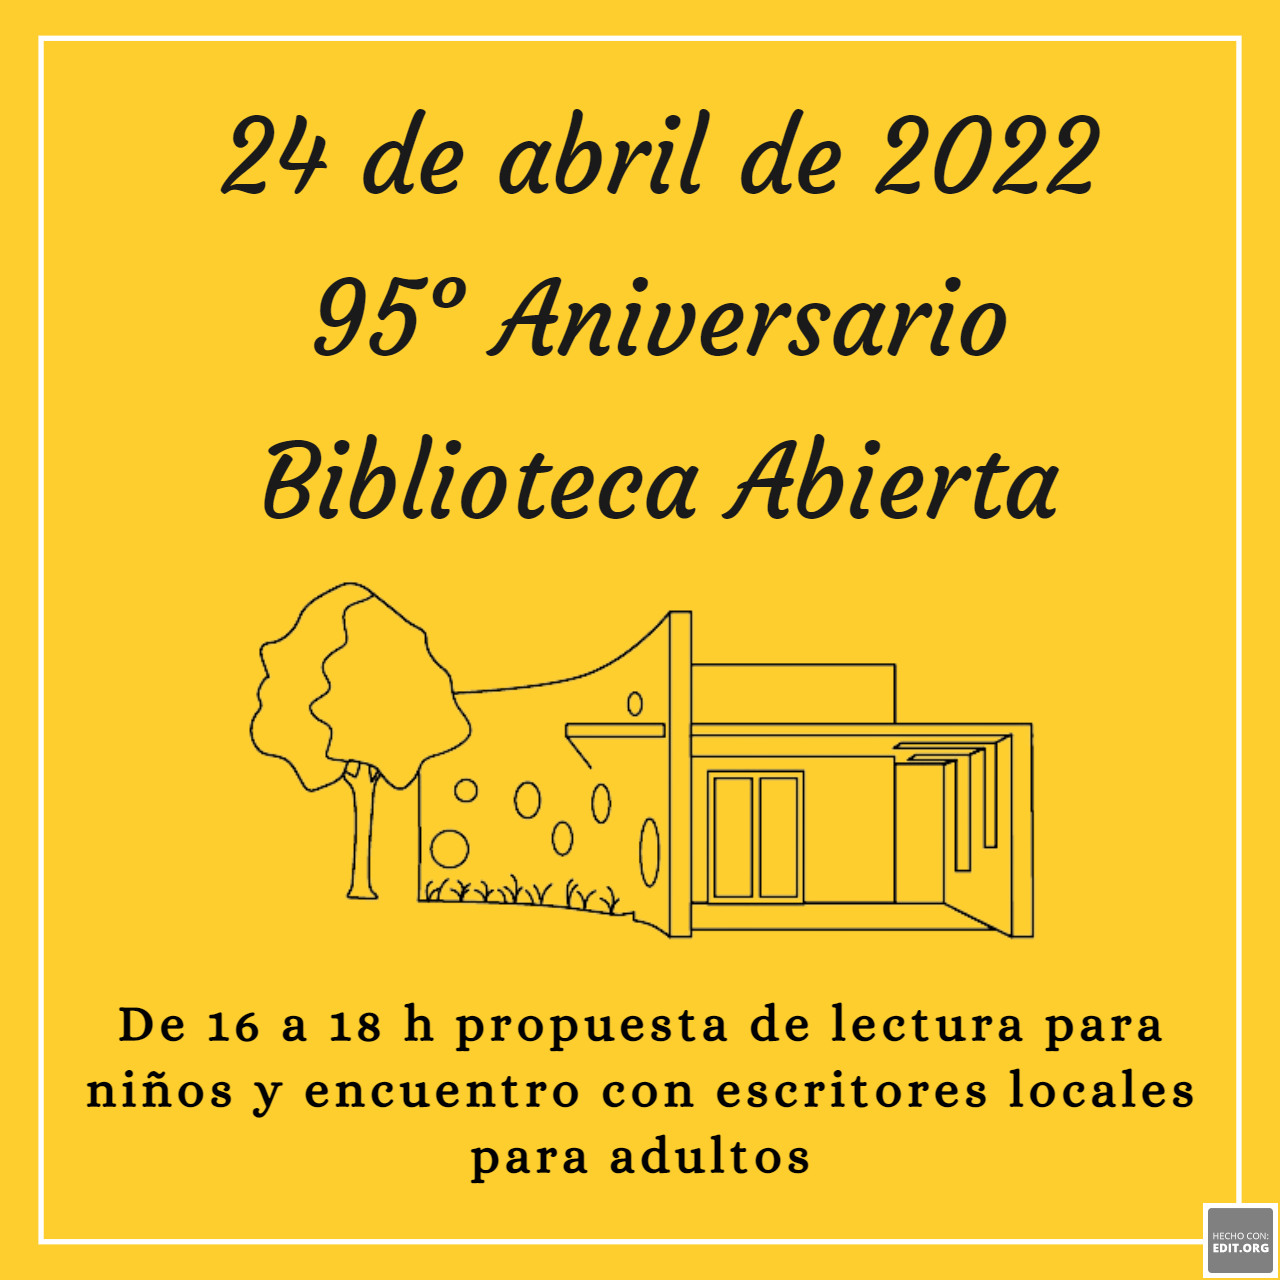 24 de abril 95° Aniversario “Biblioteca Abierta”